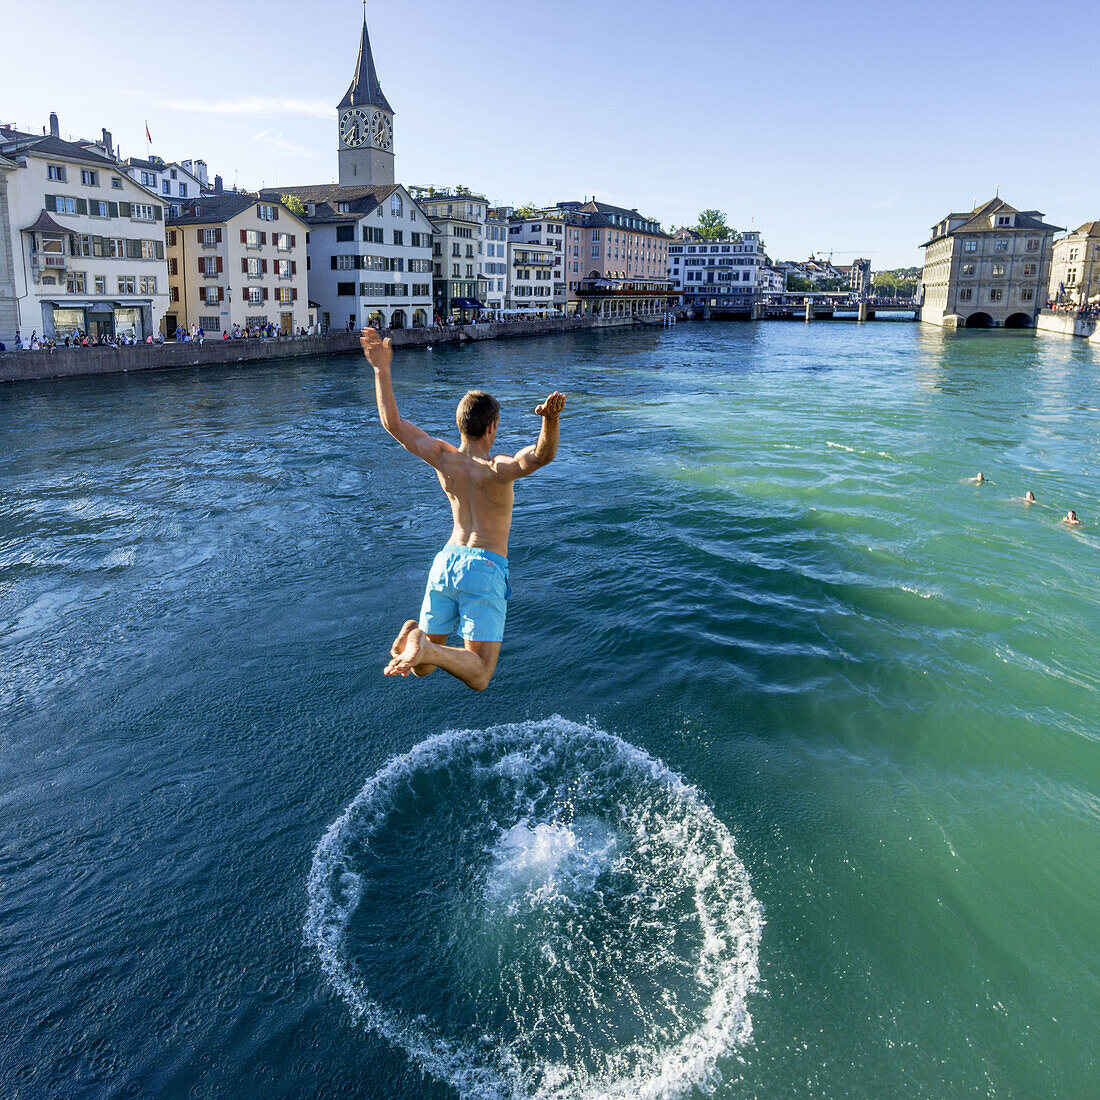 Mann springt in die Limmat, Zürich, Schweiz